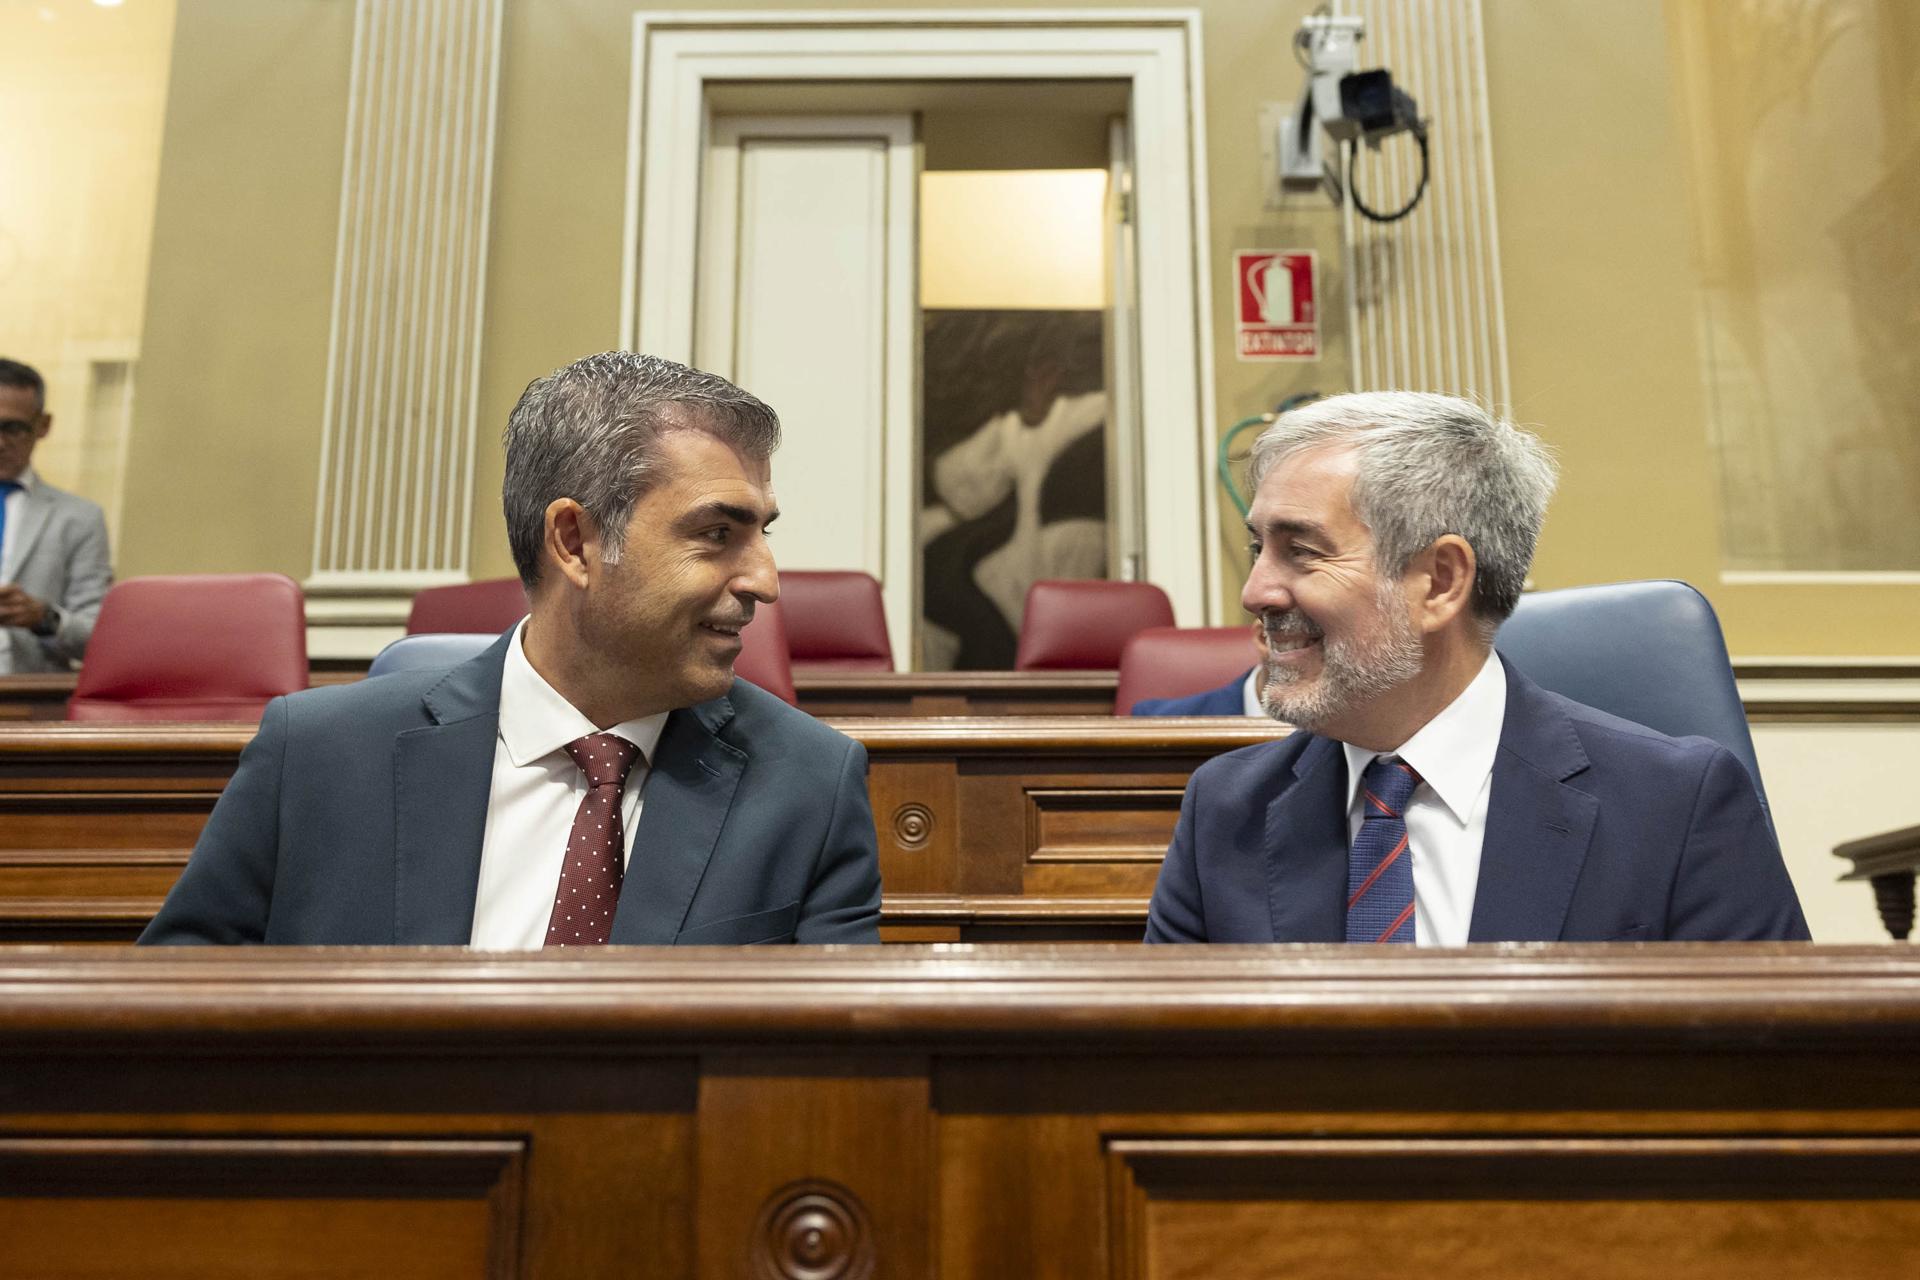 El presidente de Canarias, Fernando Clavijo (i), conversa con el vicepresidente, Manuel Domínguez (d), durante la celebración Pleno del Parlamento de Canarias en la mañana de hoy martes. EFE/Miguel Barreto